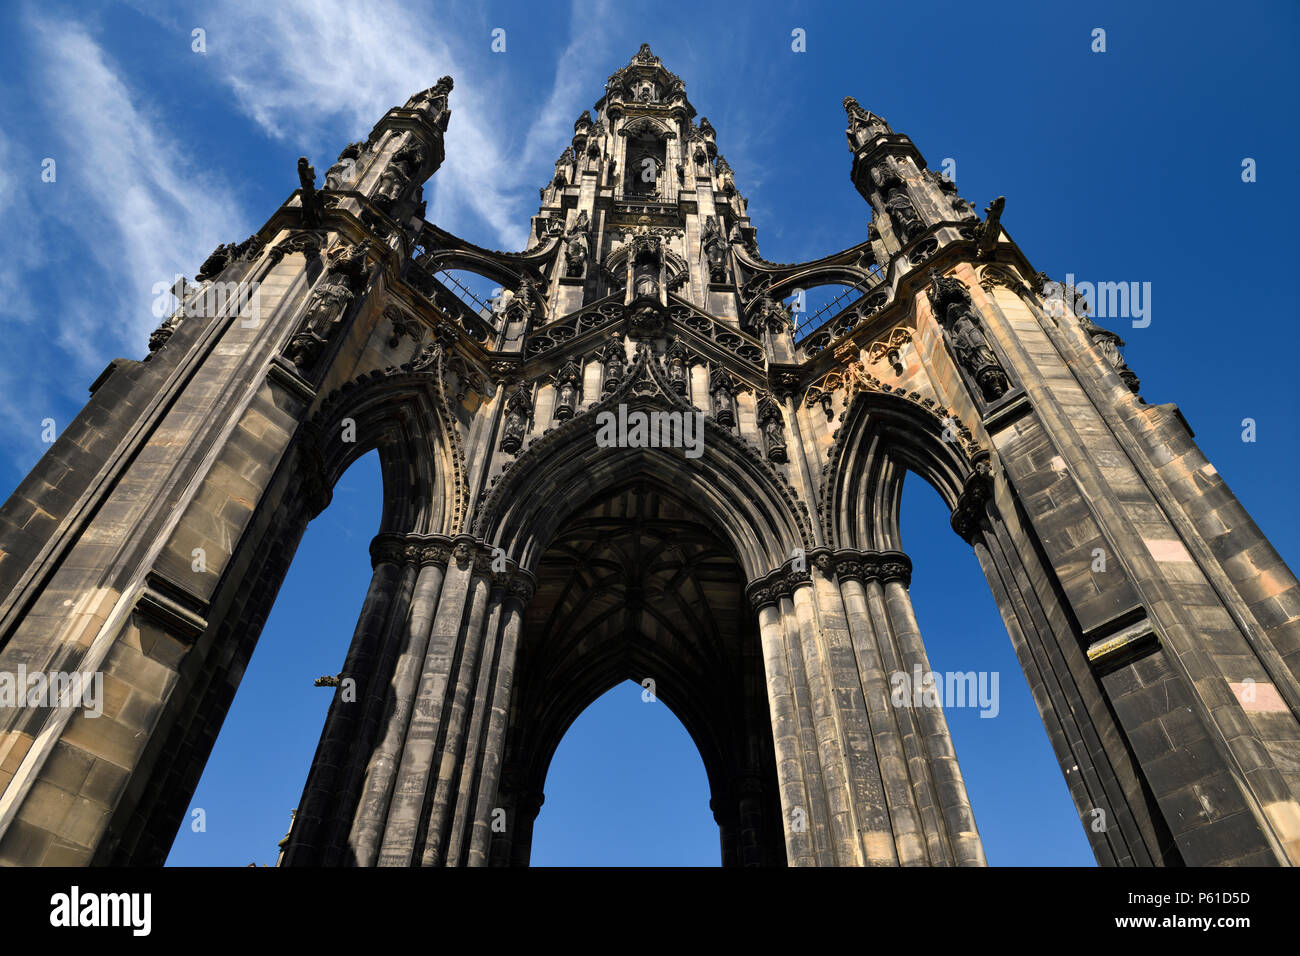 À la recherche jusqu'à la suie des pierres colorées de la Sir Walter Scott Monument de l'architecture gothique victorienne à Edimbourg Ecosse UK avec ciel bleu Banque D'Images